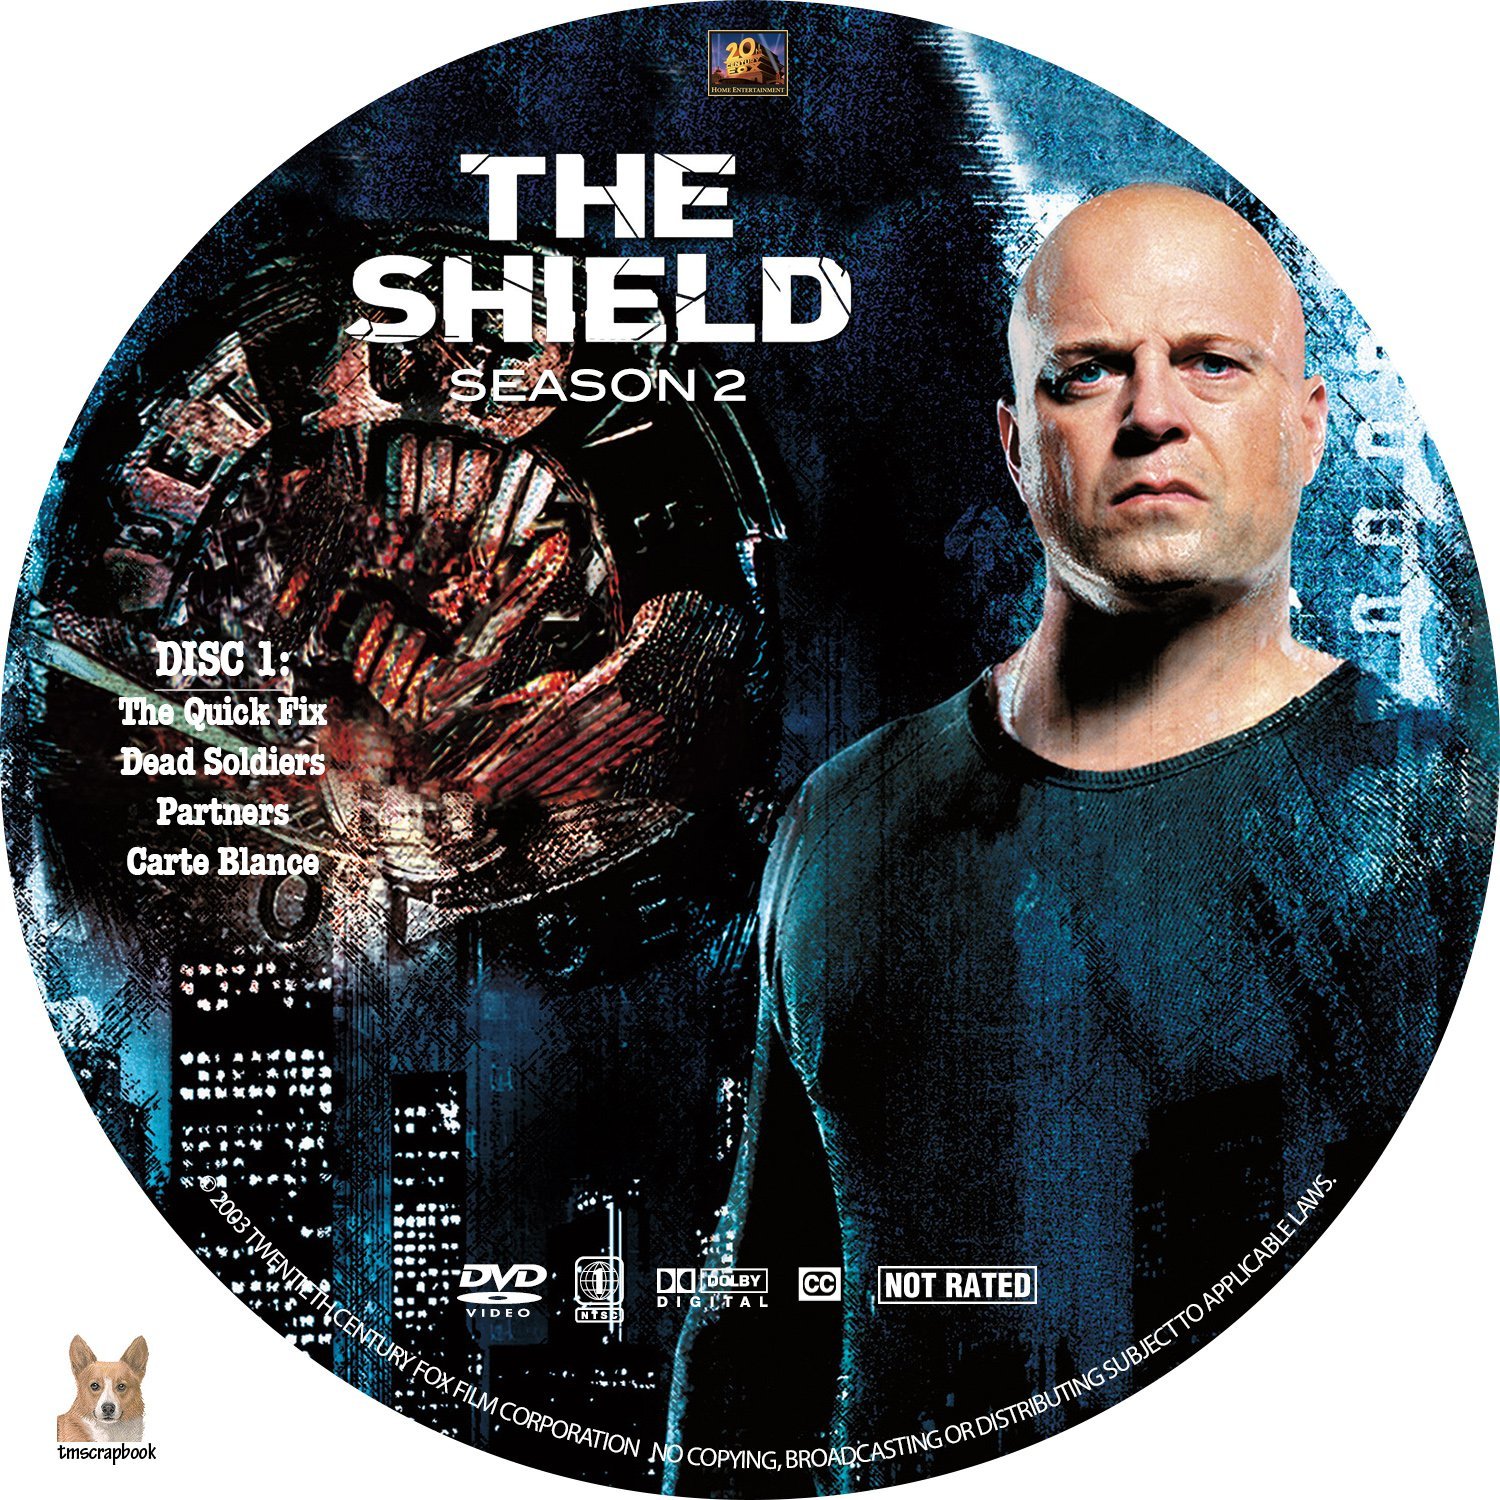 Amazoncom: The Shield, Season 2: Guy Ferland, Scott